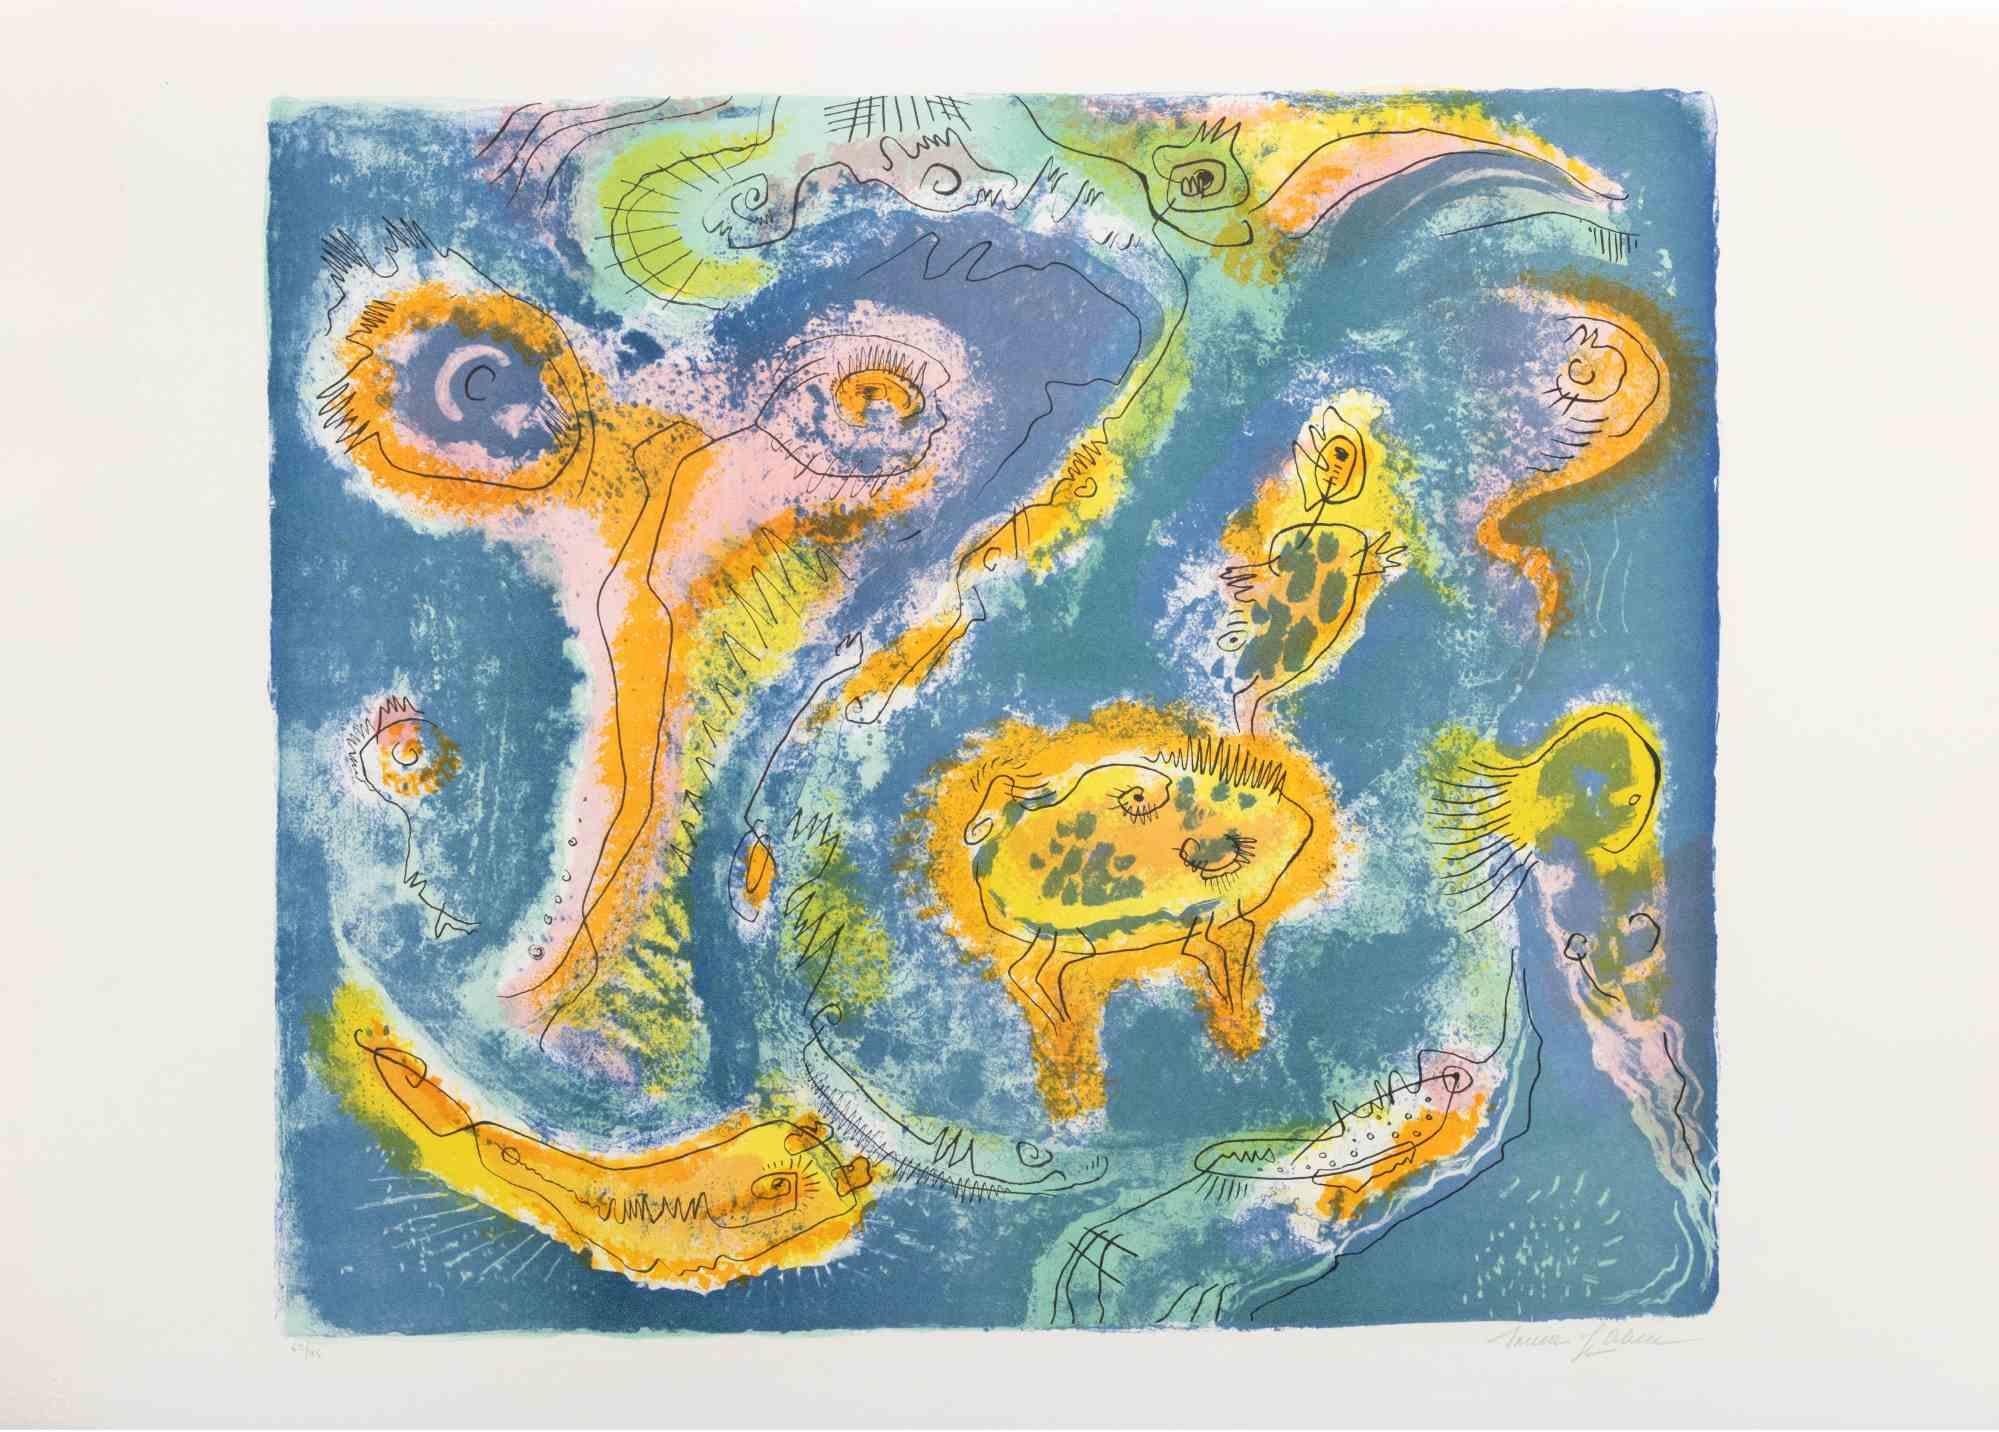 The Pond ist ein zeitgenössisches Kunstwerk von Le Pond aus den 1970er Jahren.

Gemischtfarbige Lithographie.

Handsigniert am unteren Rand.

Am unteren Rand nummeriert.

Auflage von 62/95.